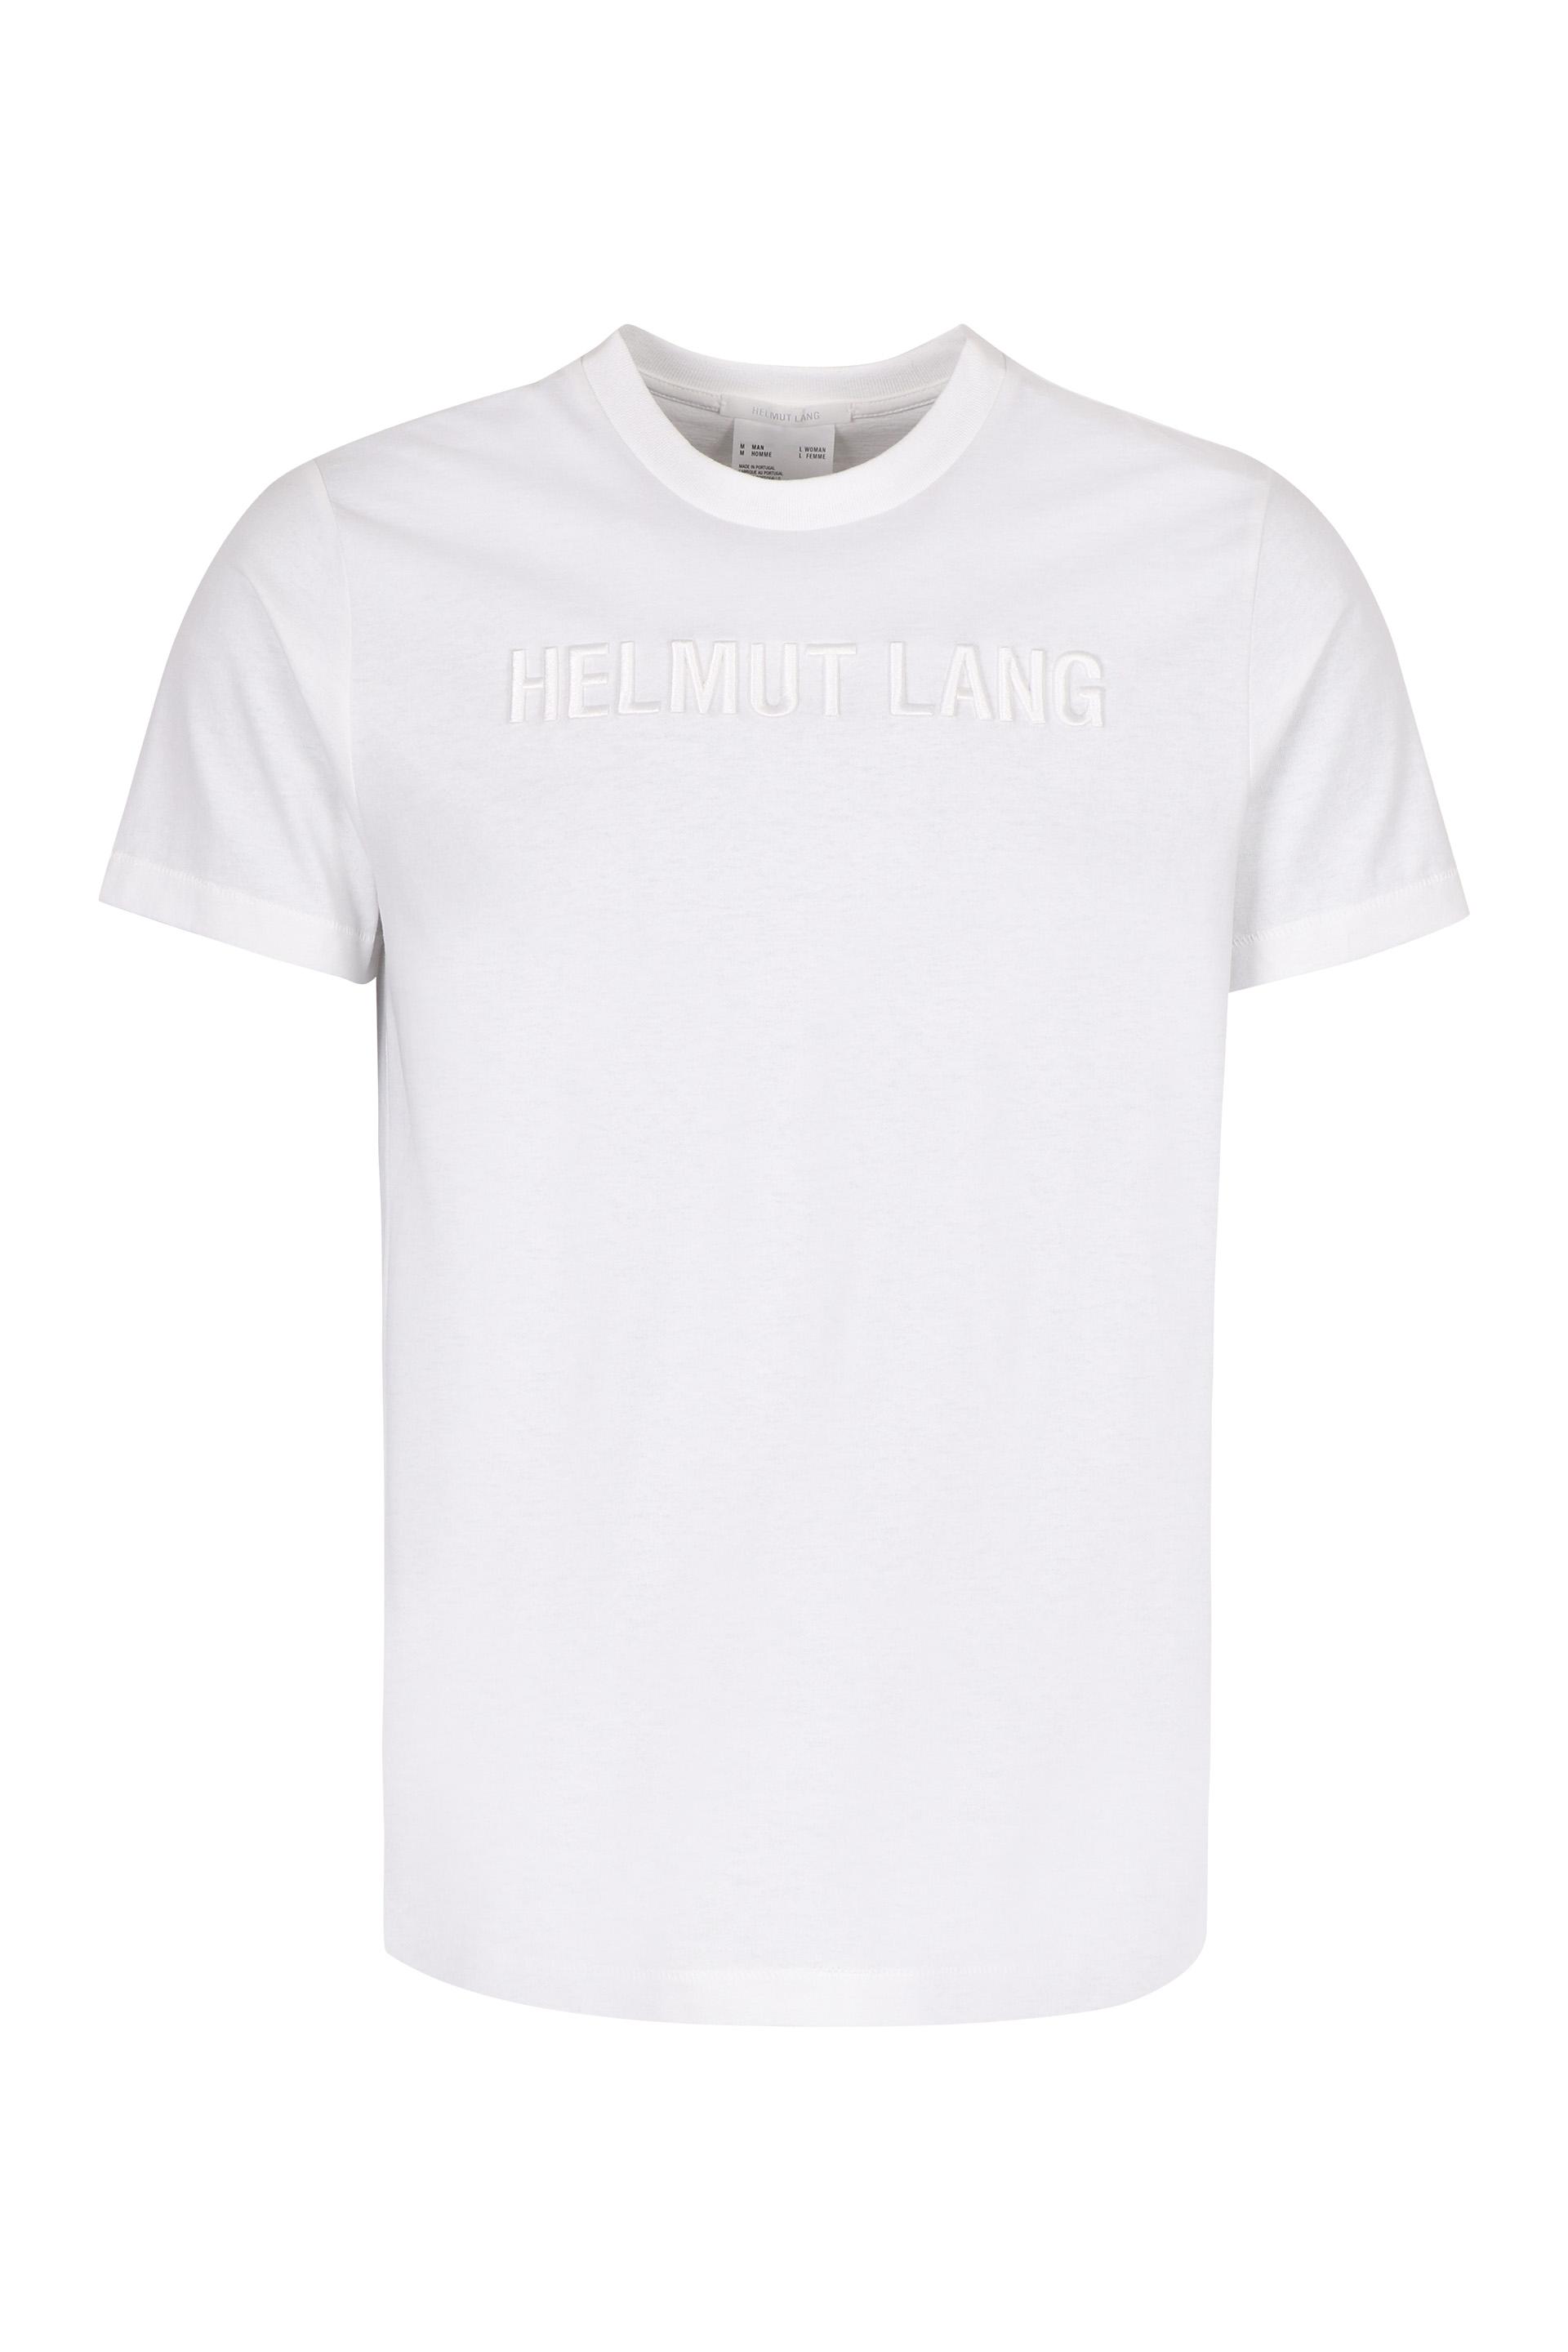 Helmut Lang Logo Print Cotton T-shirt in White for Men - Lyst